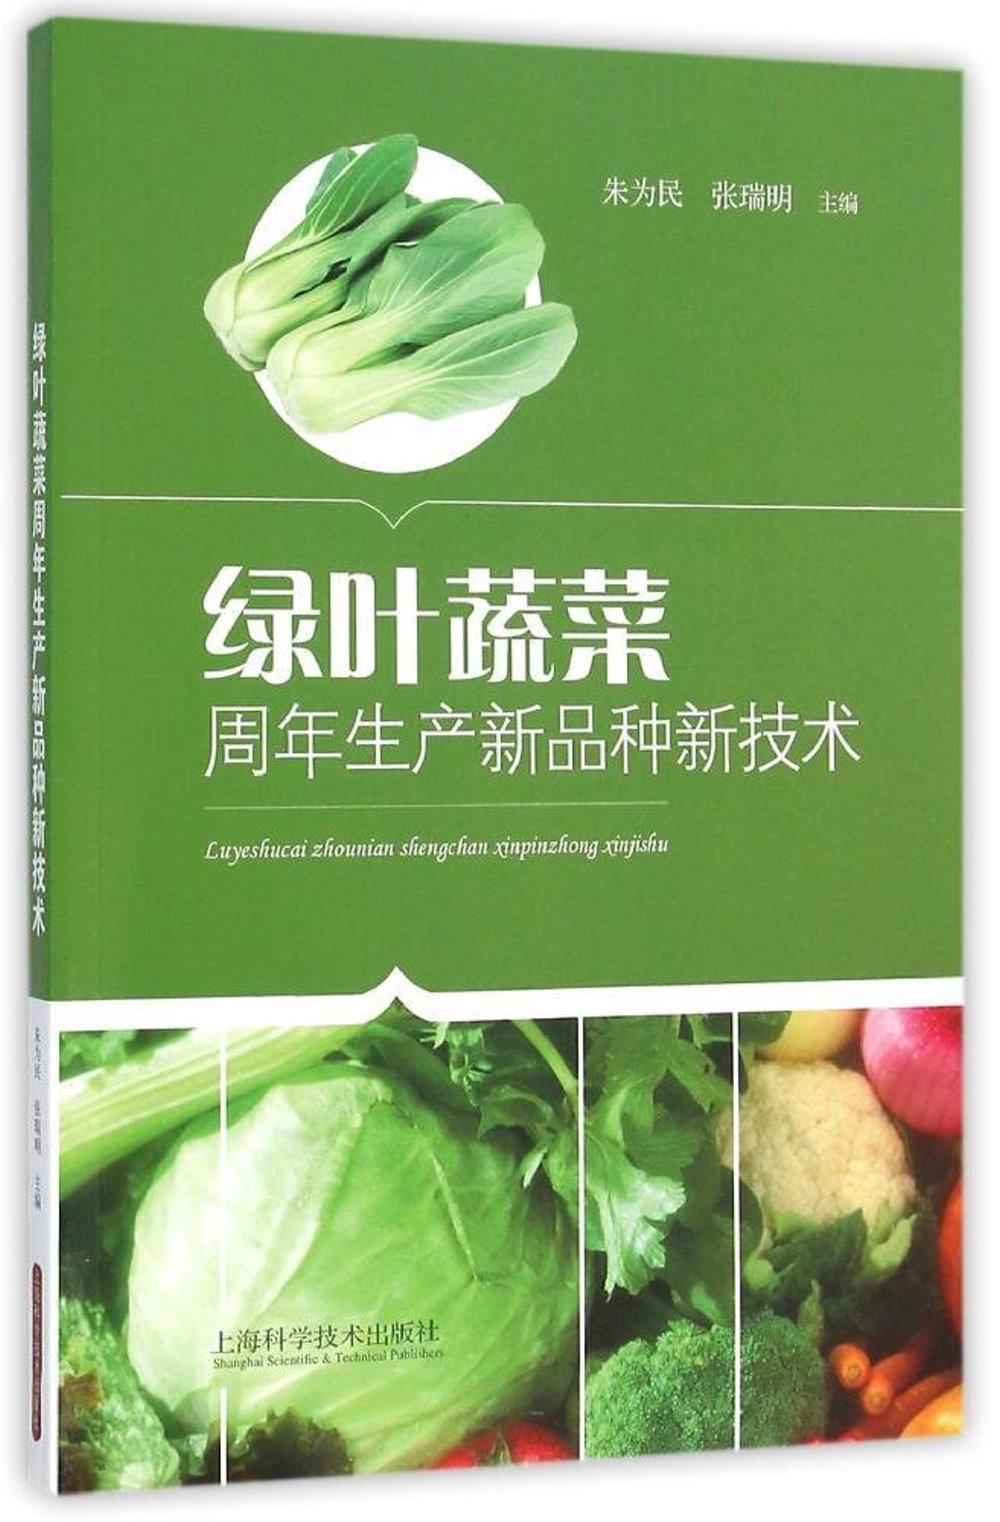 綠葉蔬菜周年生產新品種新技術